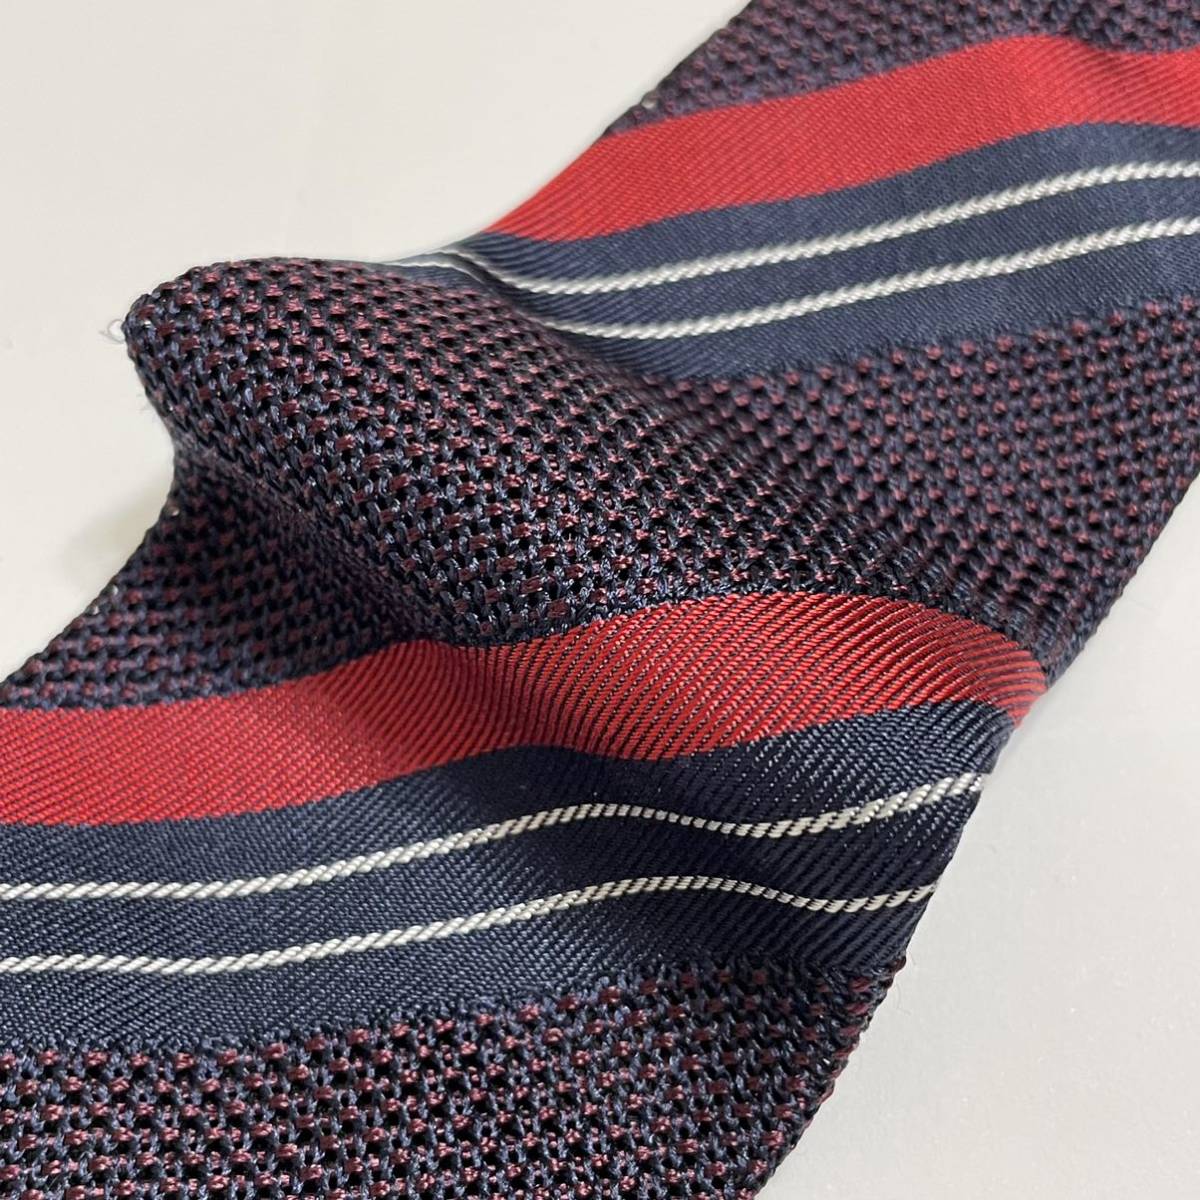  новый товар Италия. галстук . индустрия бренд FIORIO /fio rio шелк сетка полоса галстук красный UNITED ARROWS покупка 